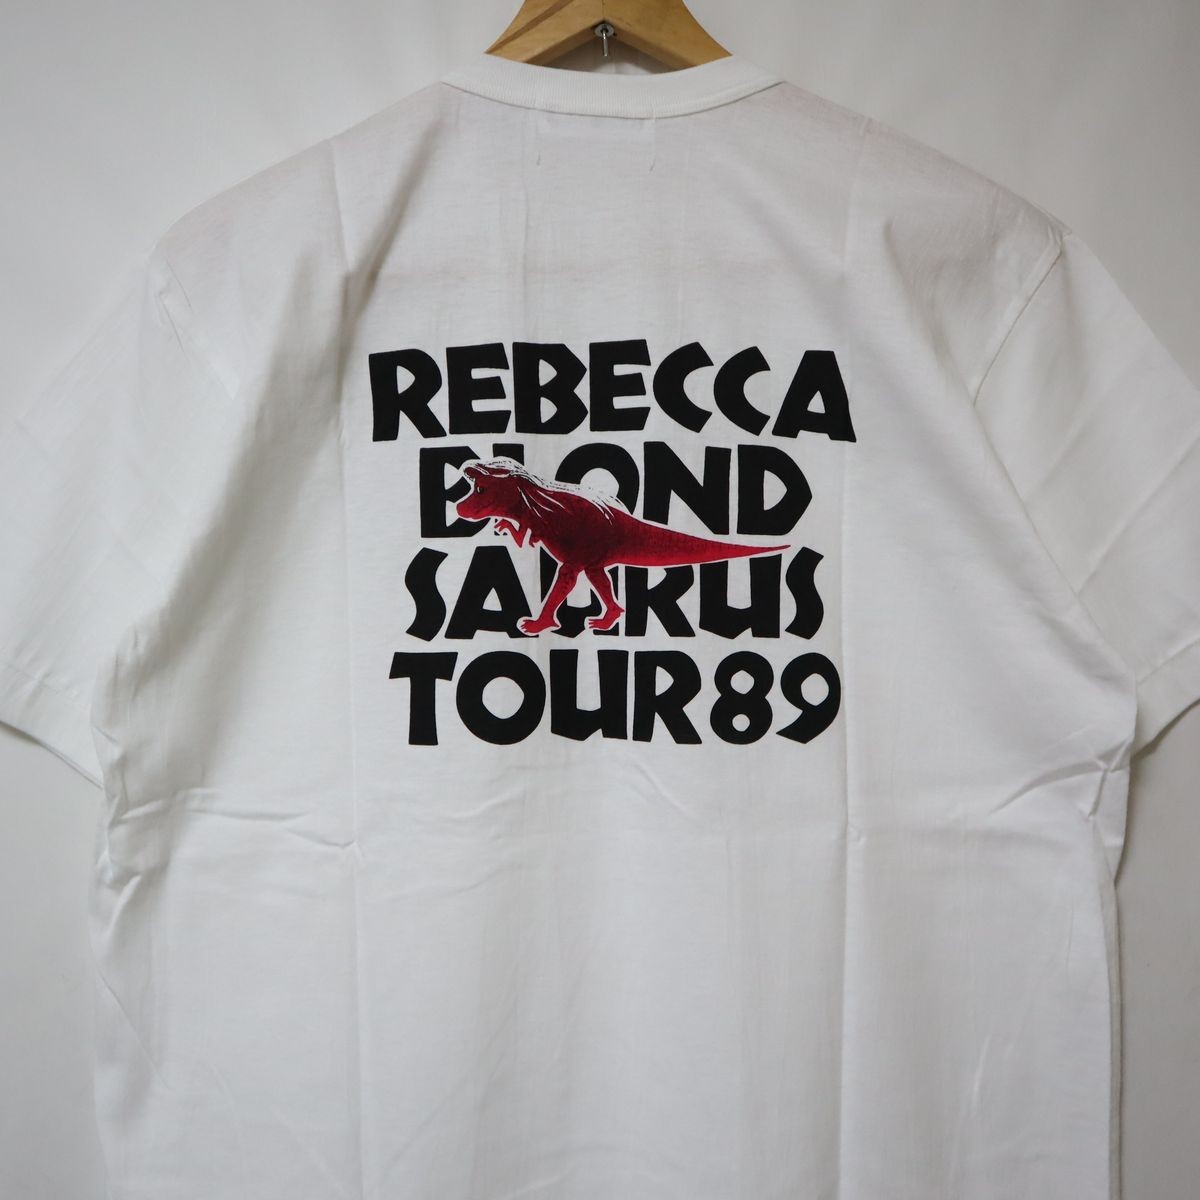 未使用品 レベッカ Rebecca BLOND SAURUS TOUR ´89 ブロンド サウルス ツアー tシャツ 1989年 89 (検索 ザウルス コンサート NOKKO バンド